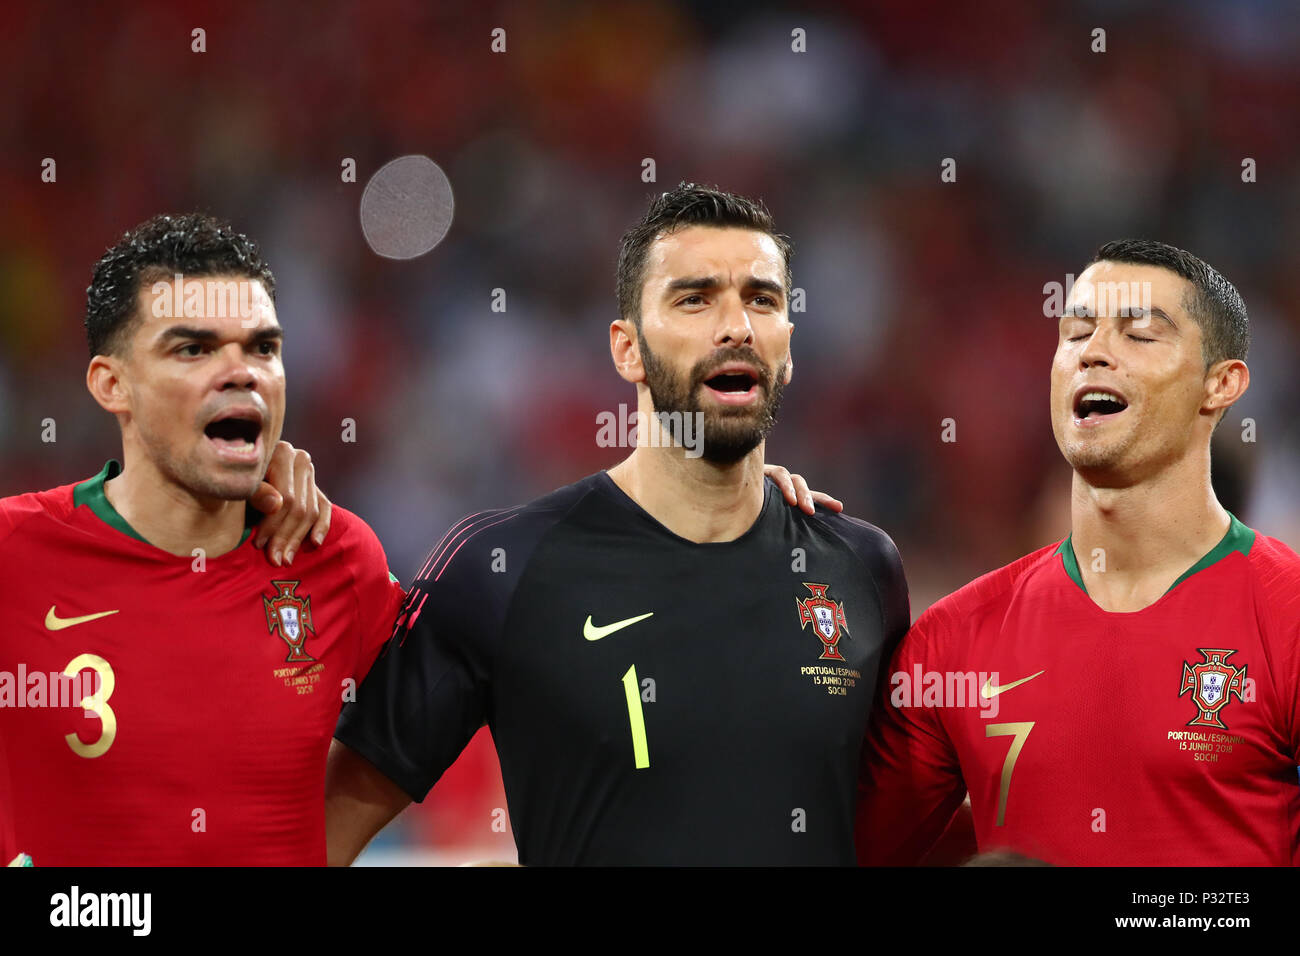 L-R) Pepe, Rui Cristiano Ronaldo (POR), 15 de junio de 2018 - Fútbol / Soccer : Copa Mundial de la Fifa 2018 Grupo B partido Portugal 3-3 España en